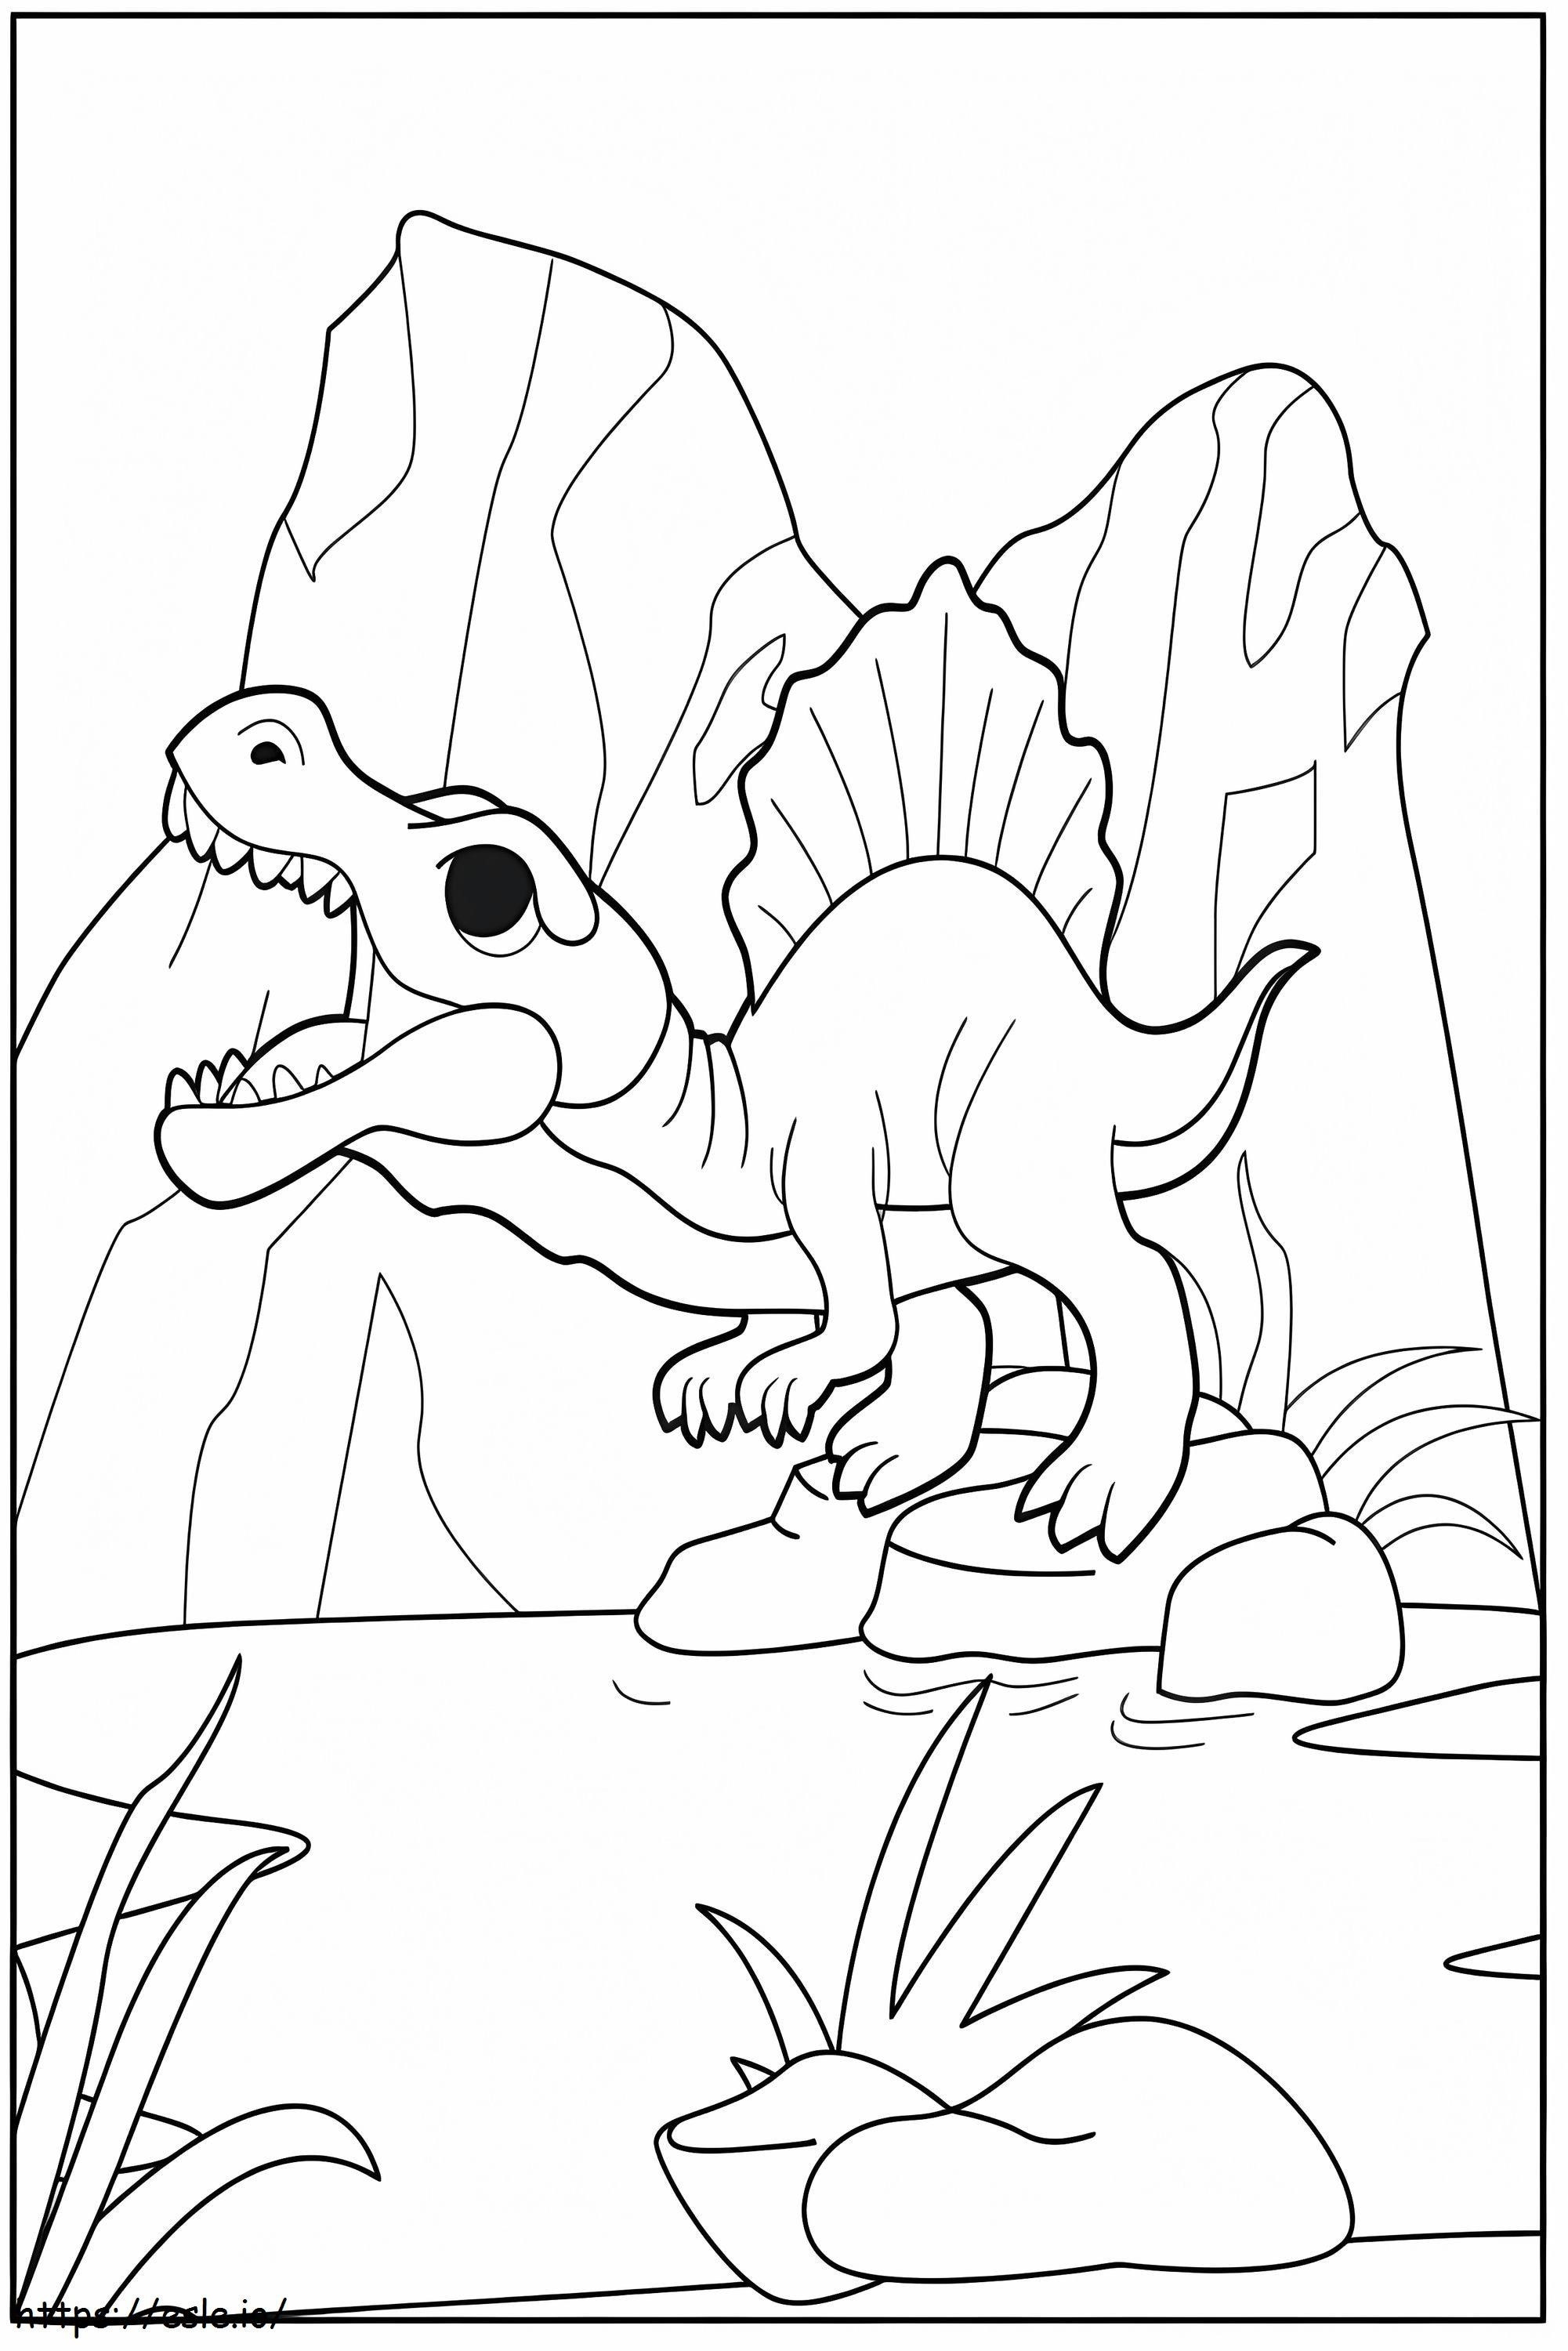 Adorable espinosaurio para colorear